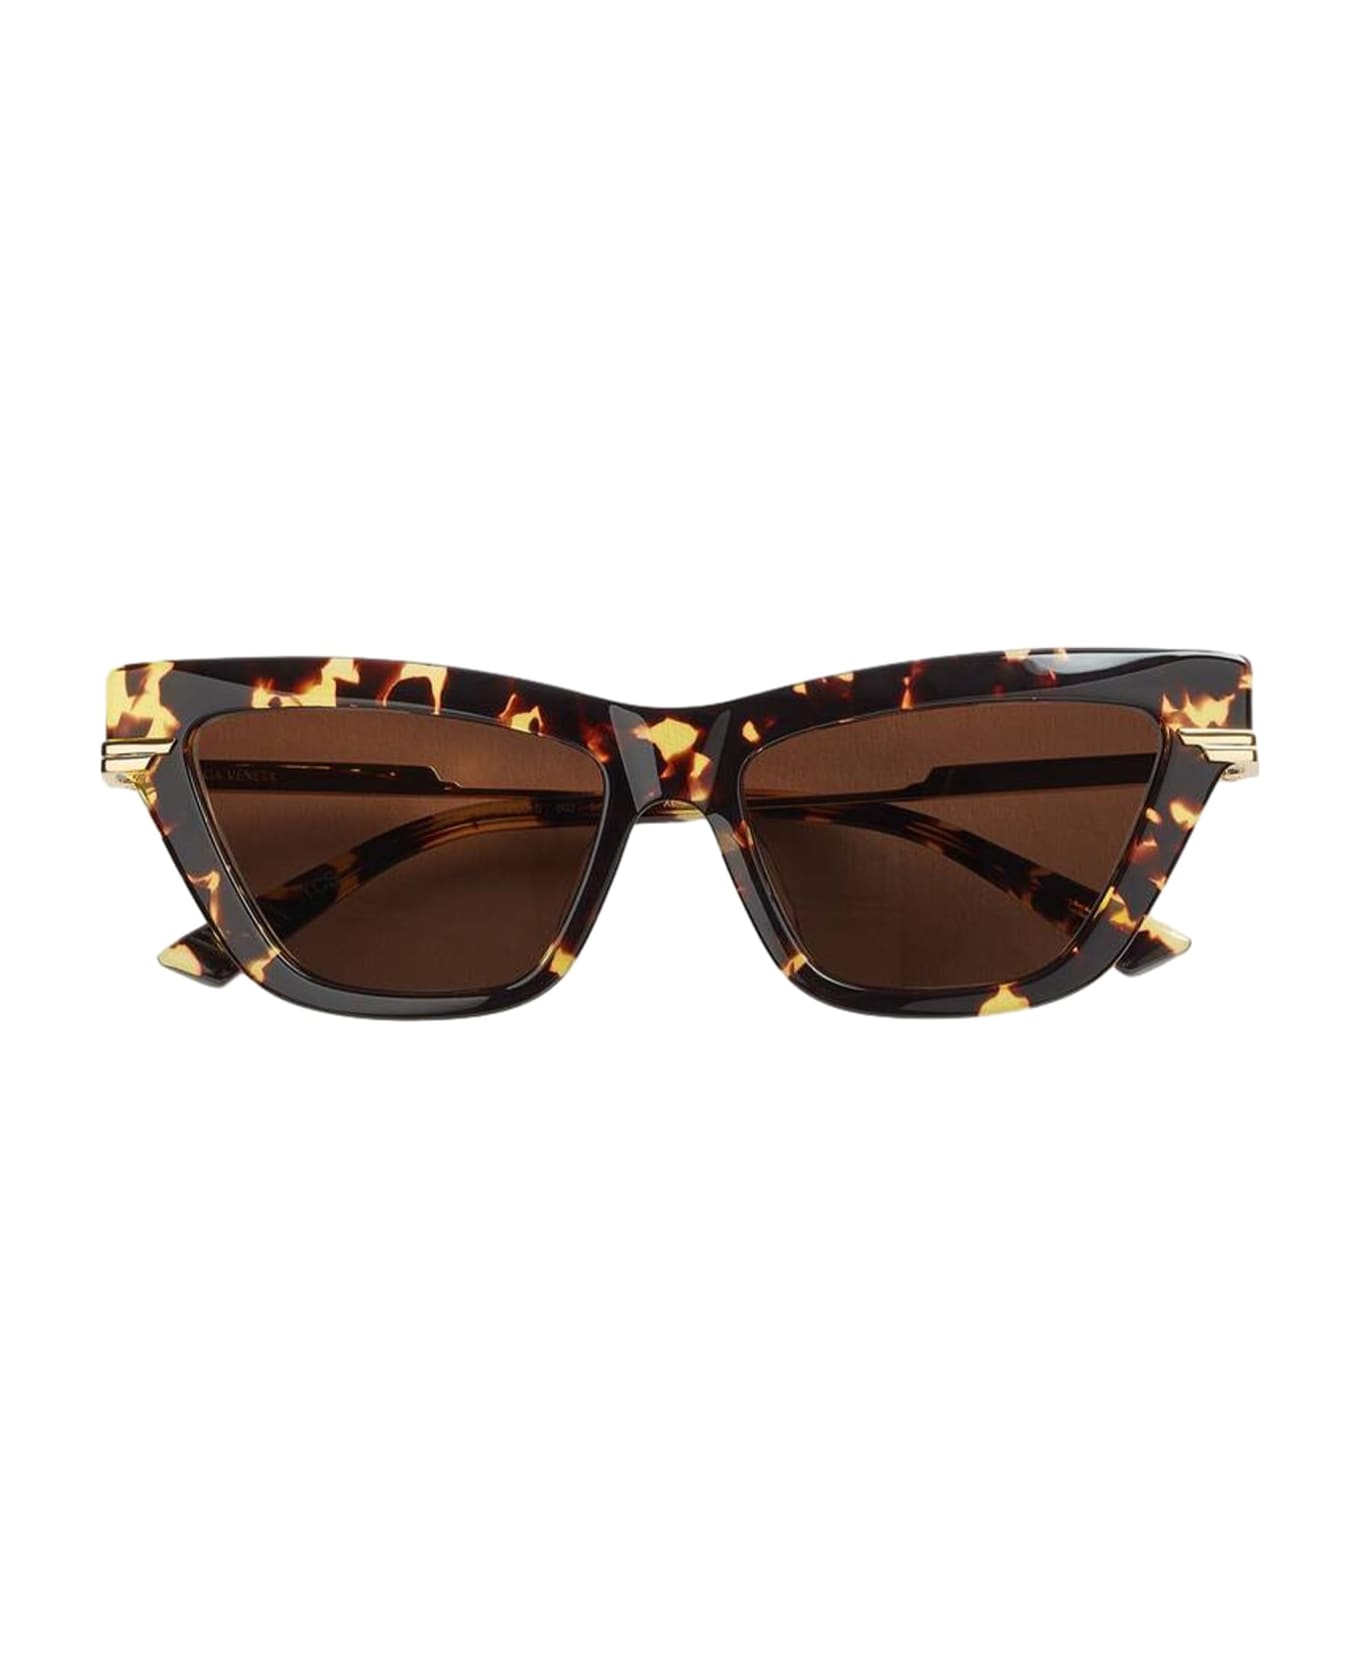 Bottega Veneta Eyewear Bv1241s-002 - Havana Sunglasses - Havana